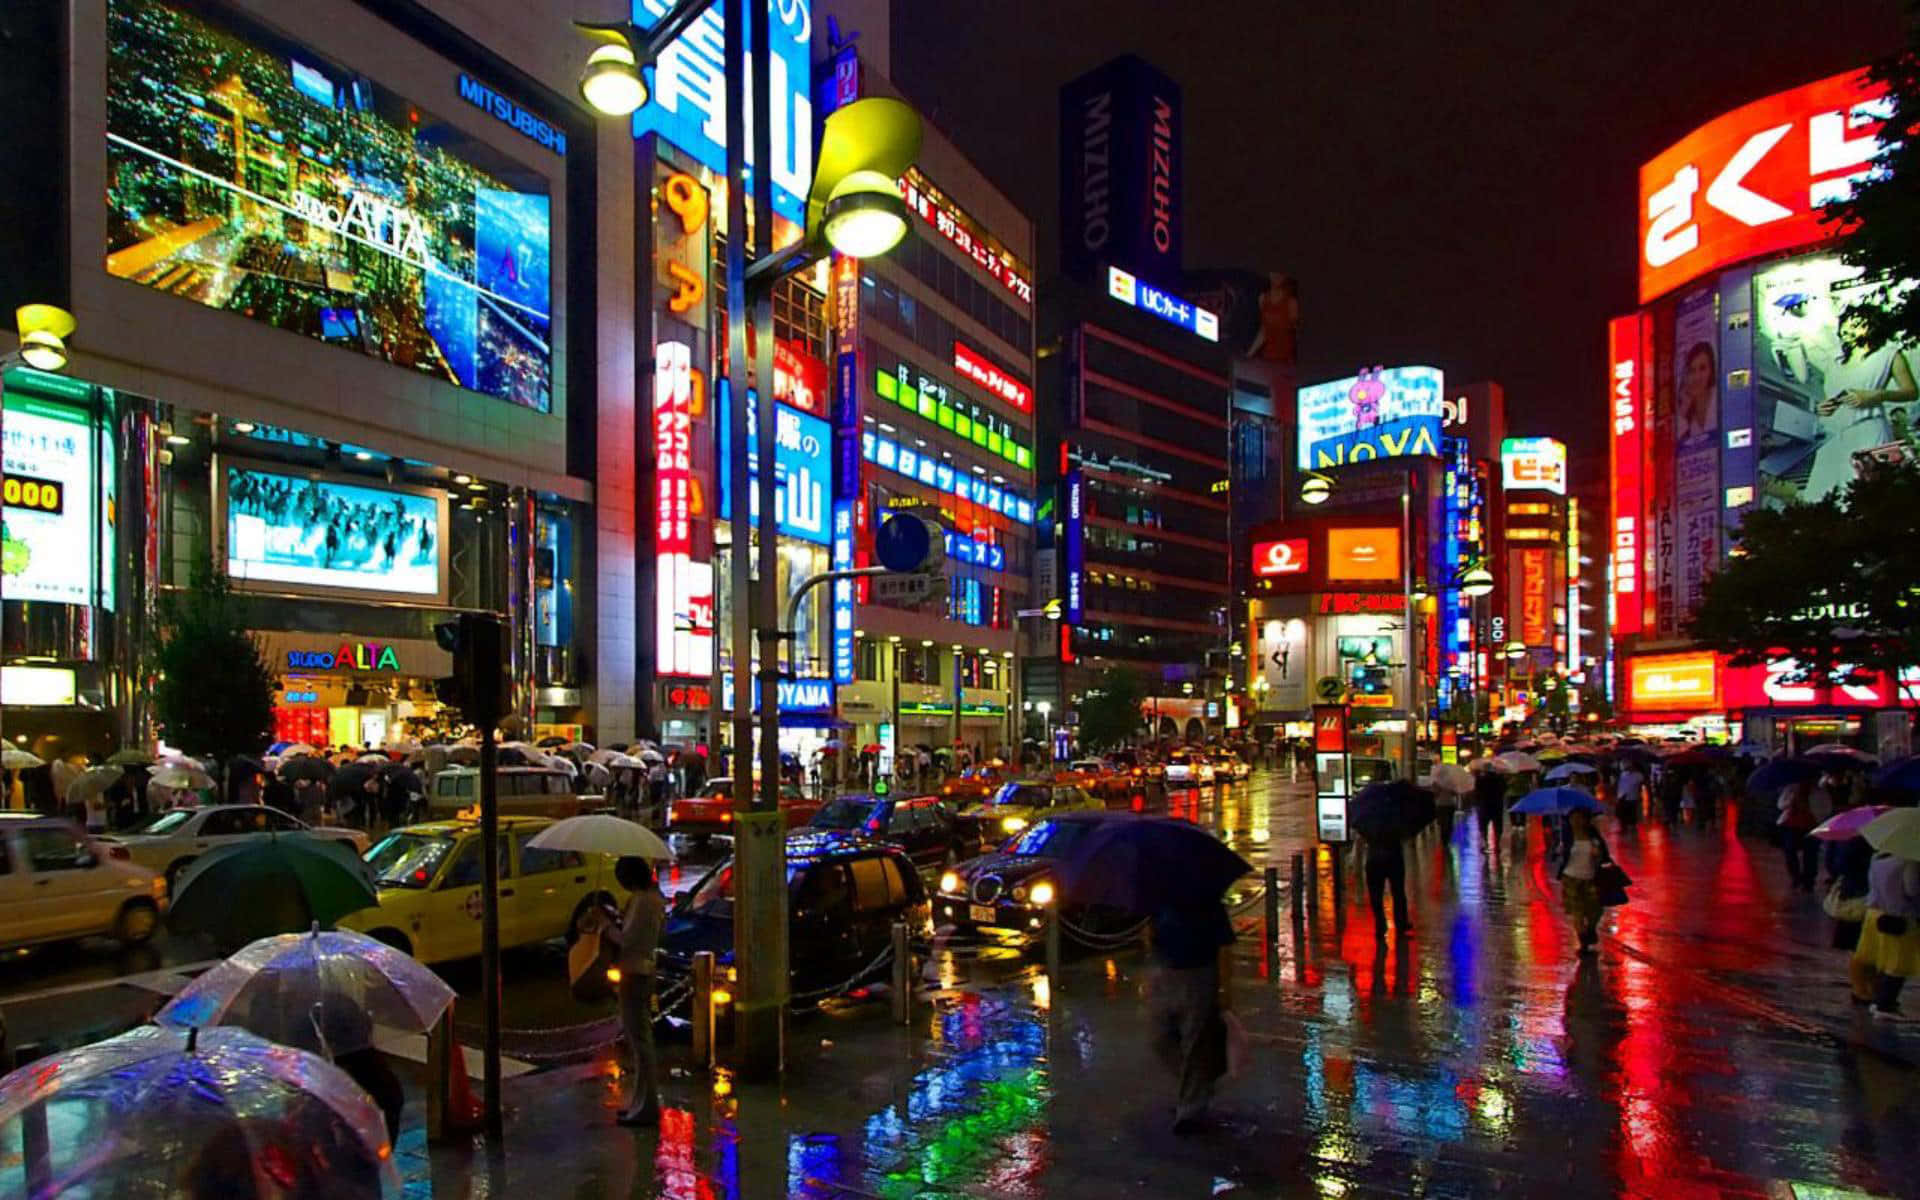 Hintergrundbildvon Tokyo - Tokyo Stadtplatz Bei Nacht.